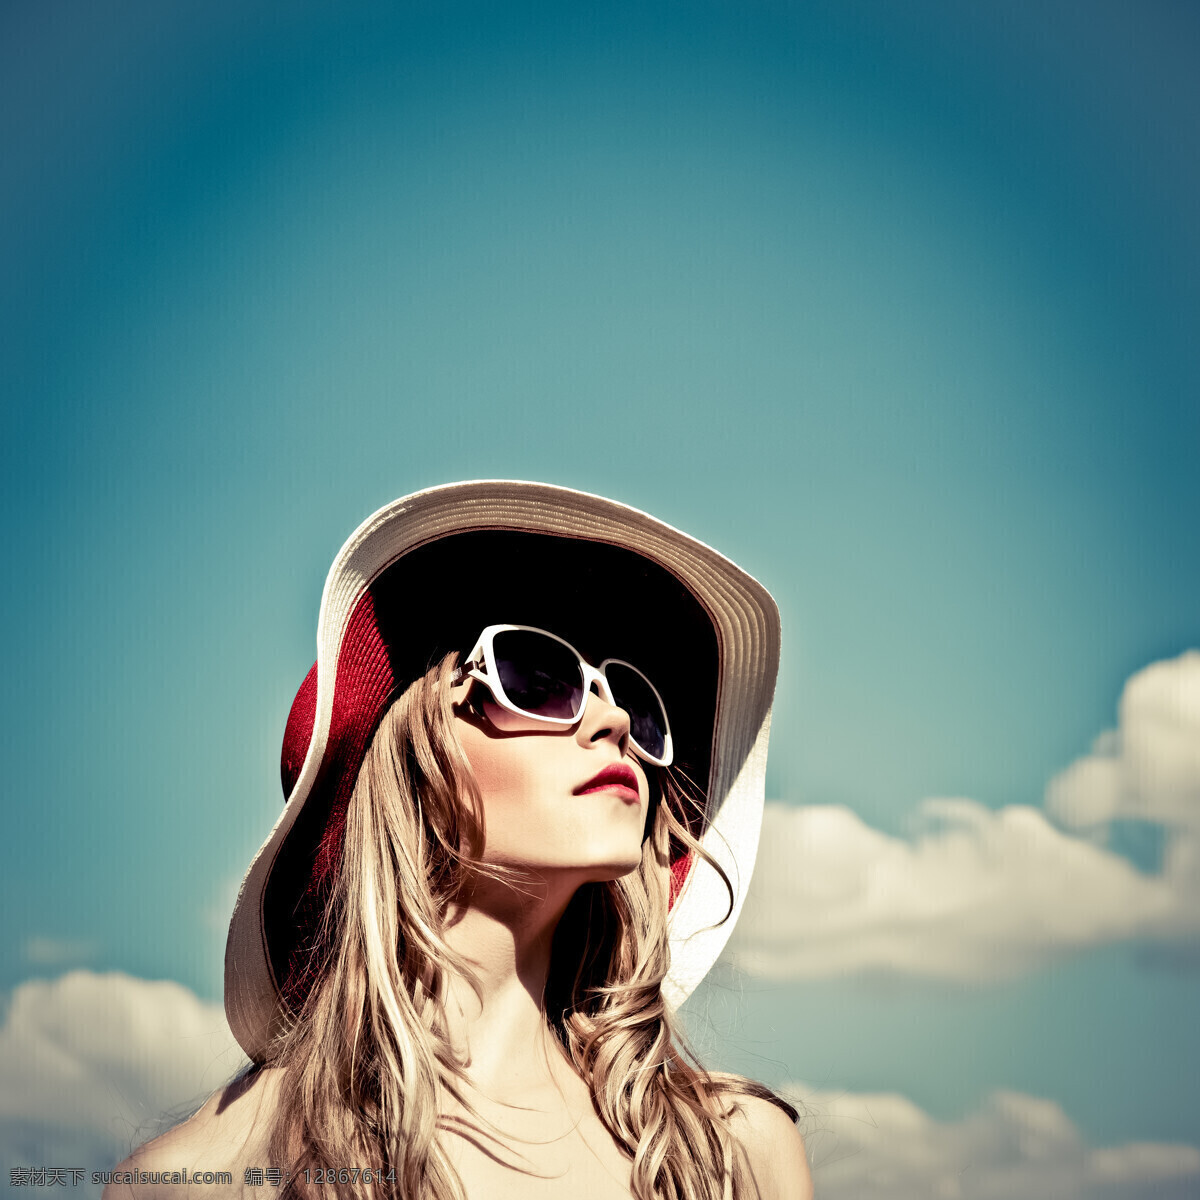 蓝天 下 美女图片 白云 抬头 美女 外国美女 夏天 性感 帽子 墨镜 人物图片